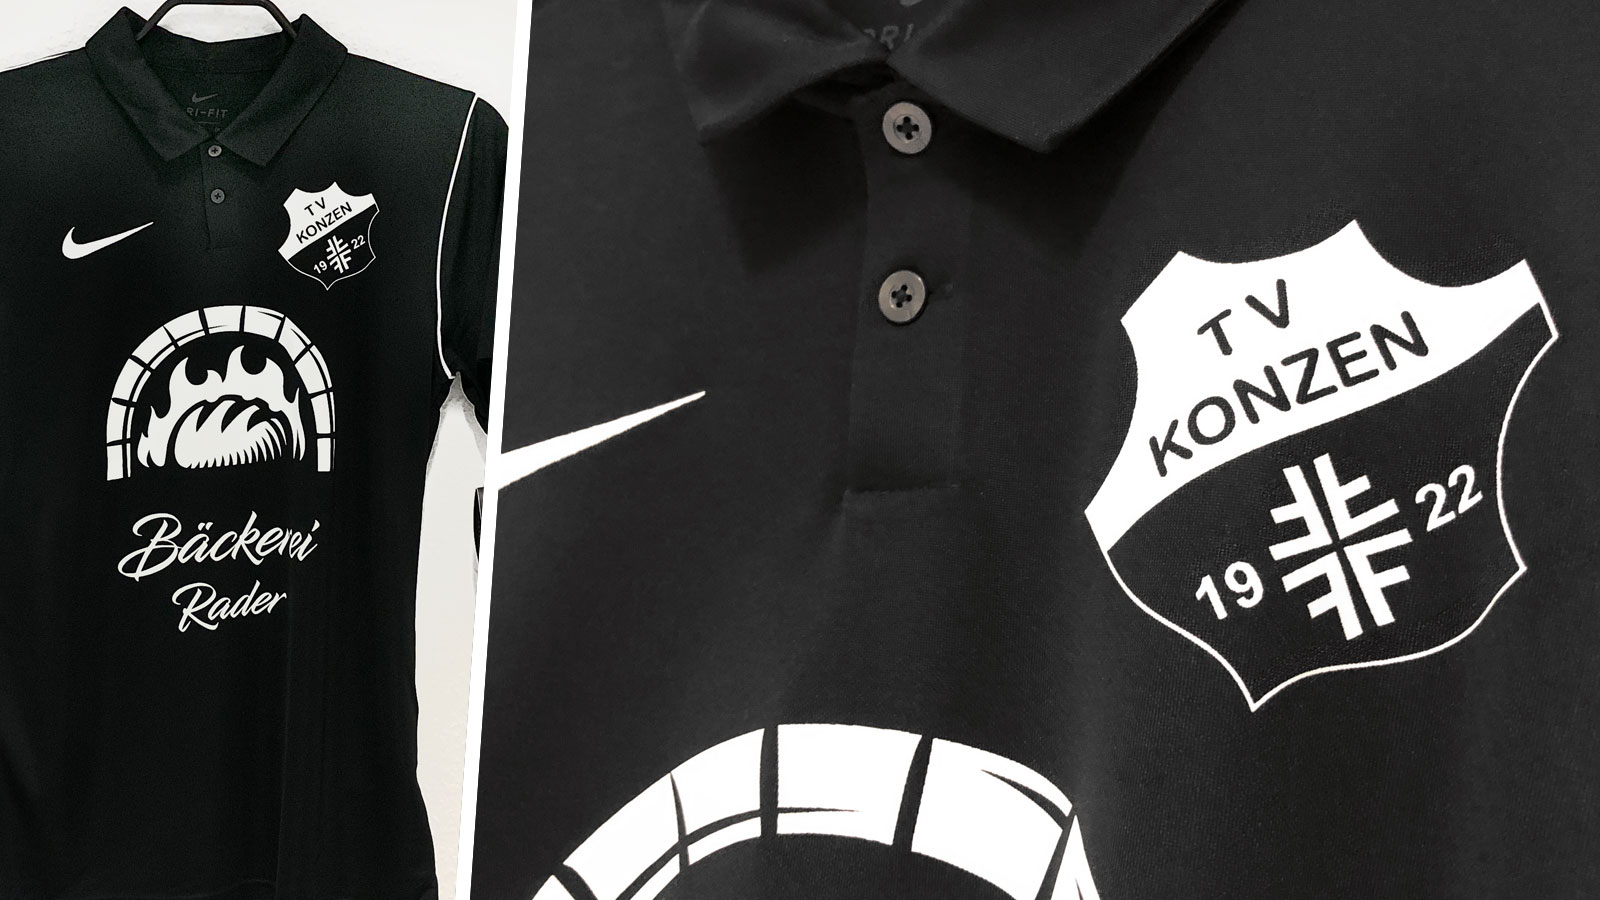 die Nike Polo Shirt mit Aufdruck des TSV Konzen